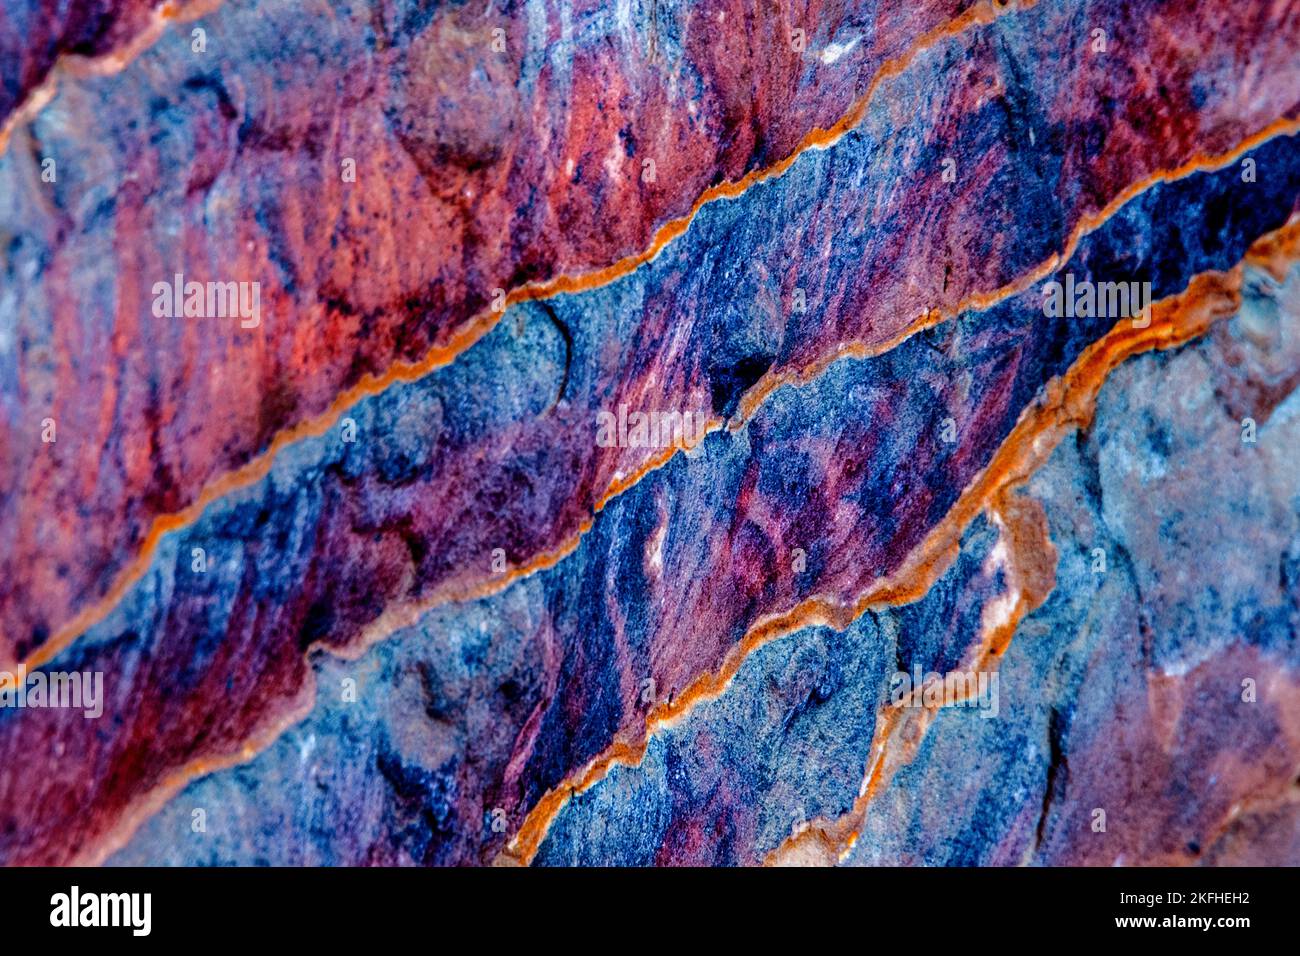 Vue sur les formations géologiques en bleu, magenta et orange Banque D'Images